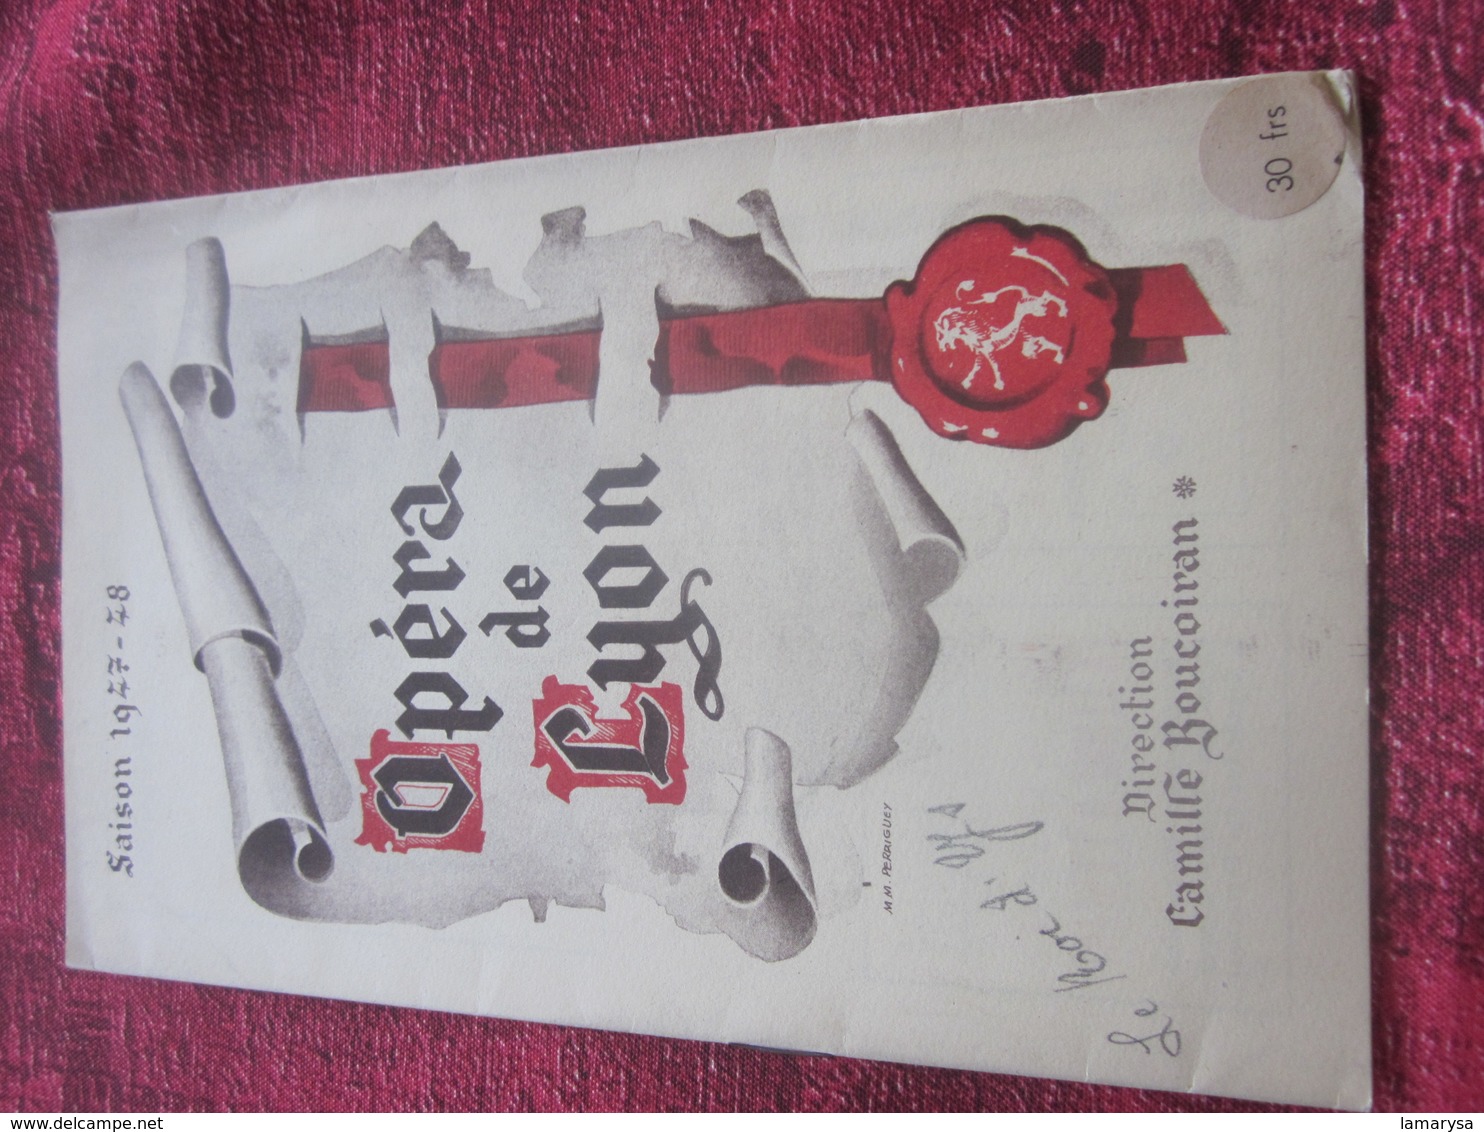 1947/48-LE ROI D'YS-DANSE BRETONNE PROGRAMME OPÉRA De LYON-SPECTACLE-PHOTOS ARTISTES COMÉDIENS -ACTEURS-DANSE-PUBLICITÉ - Programmes